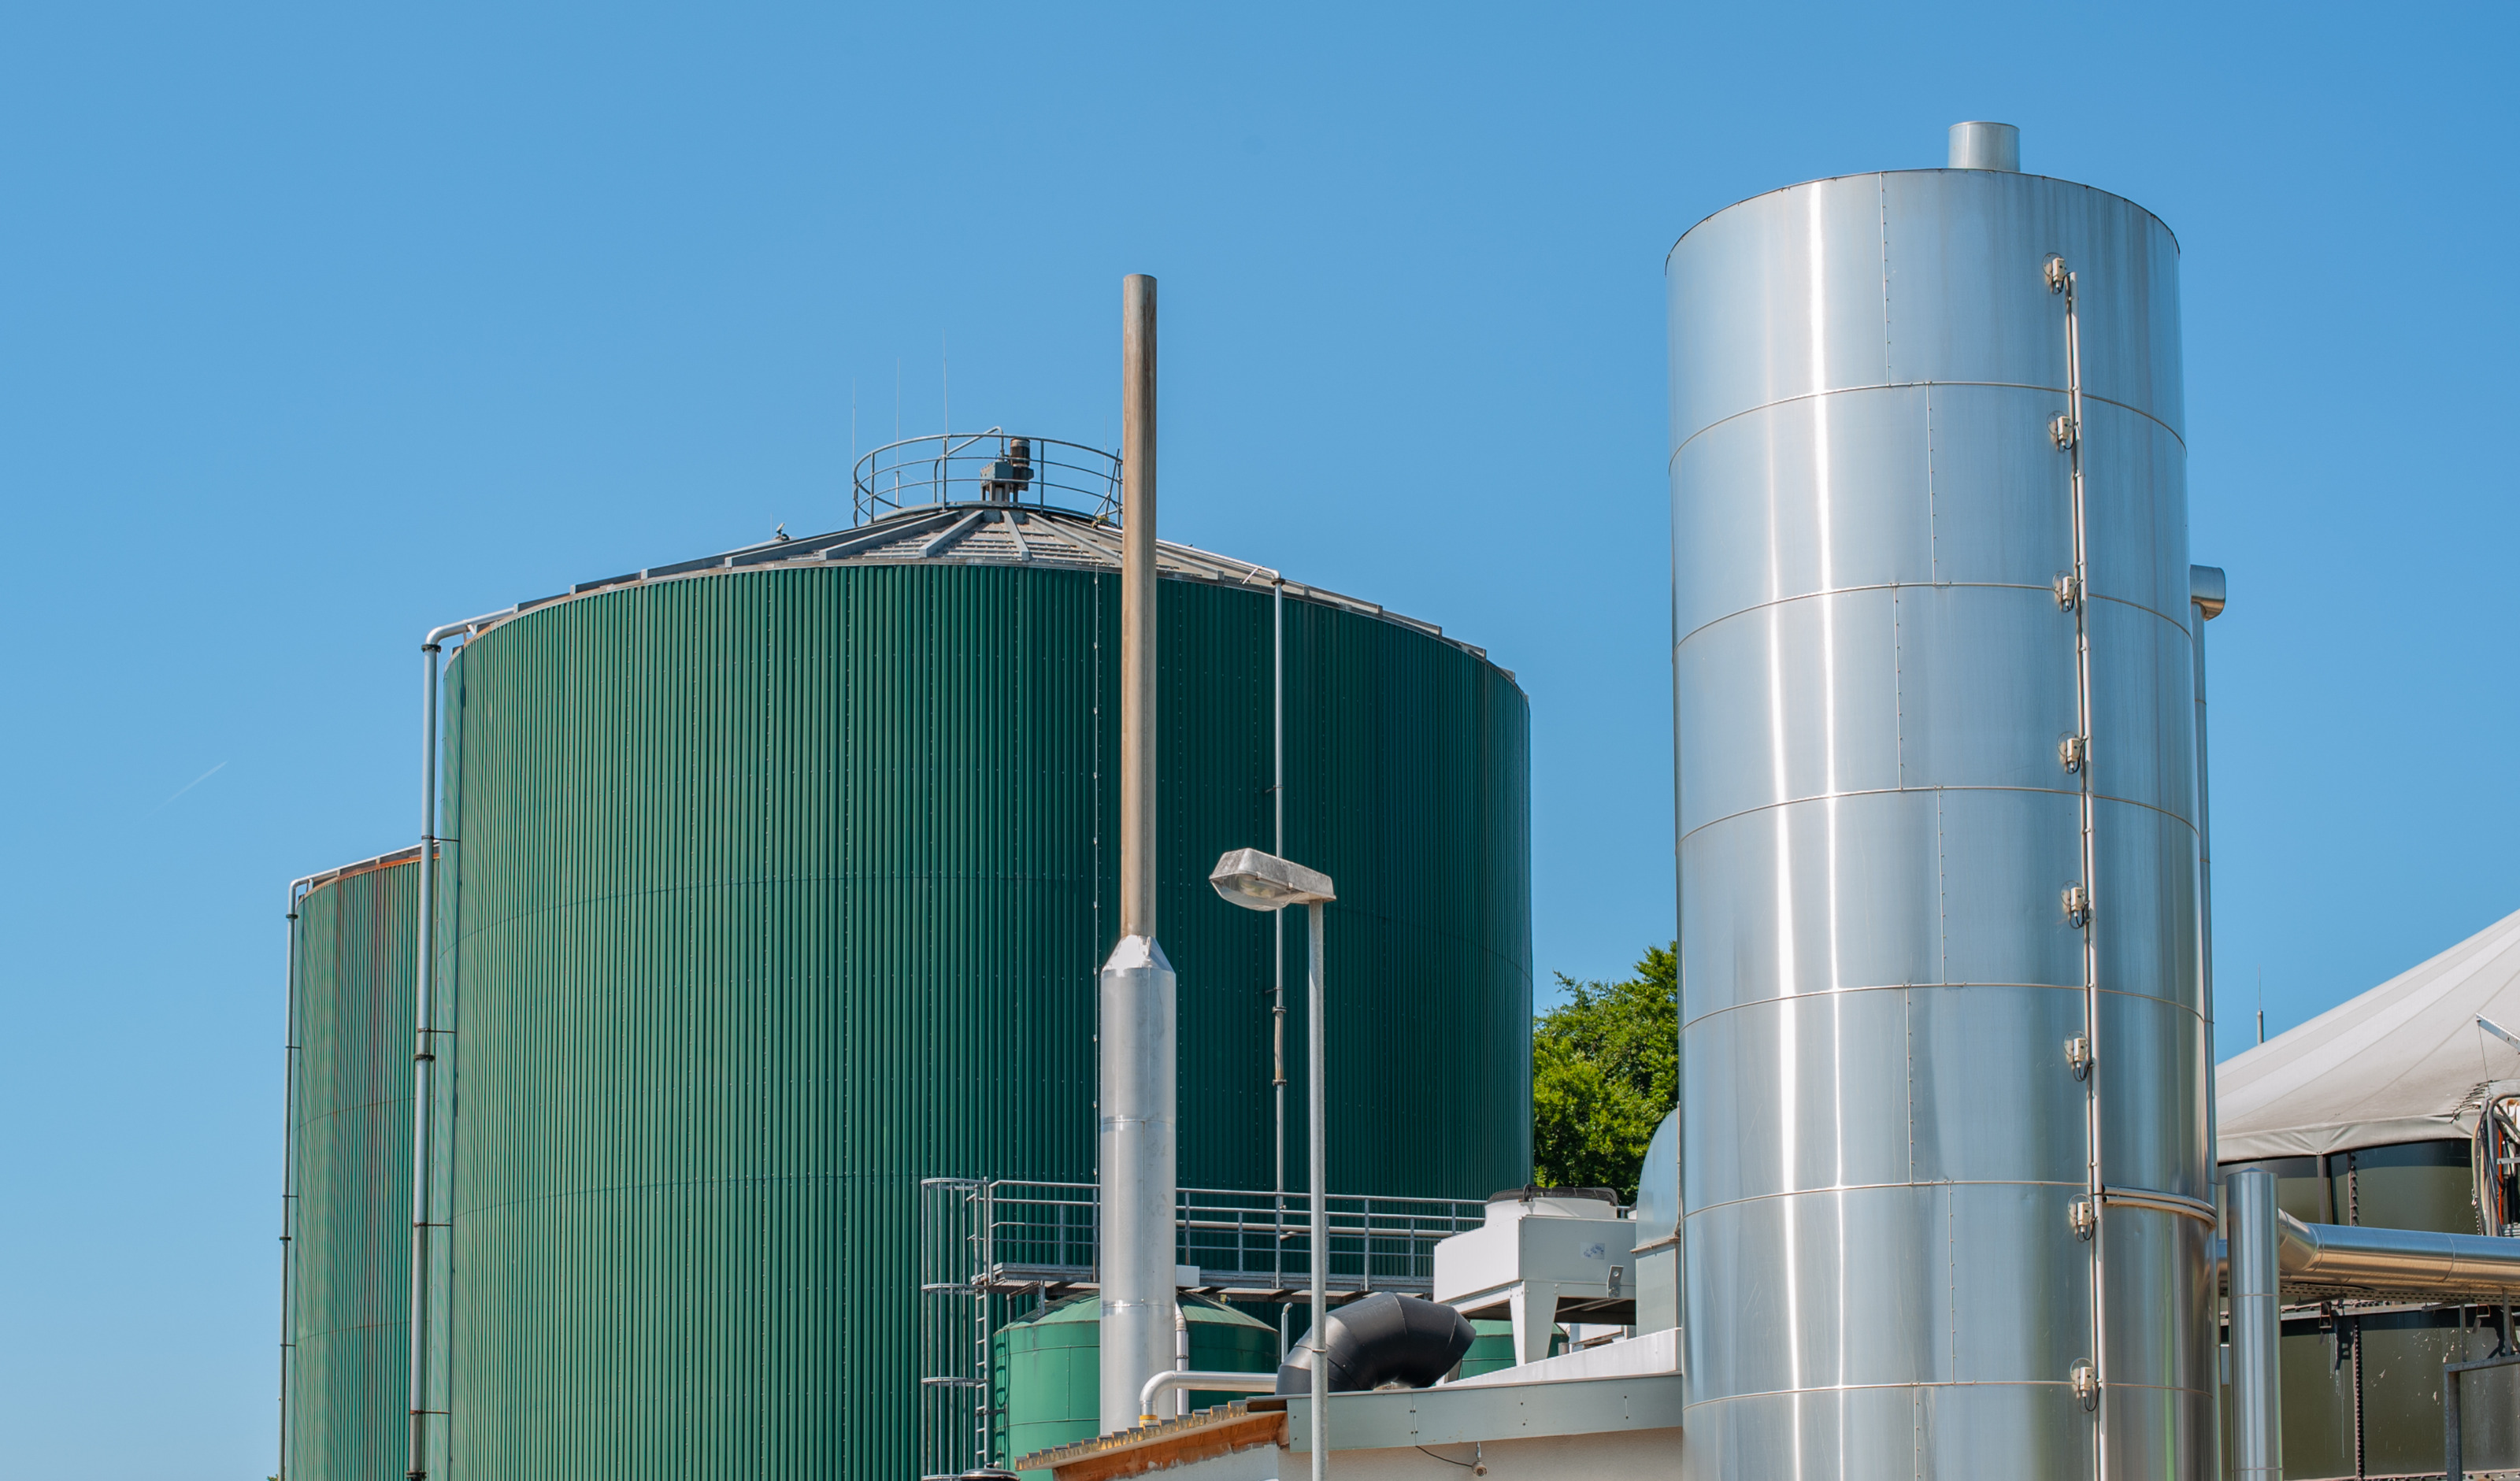 Außenansicht einer Biogasanlage: Große grüne Metallsilos neben silbernen Metallturm unter blauem Himmel